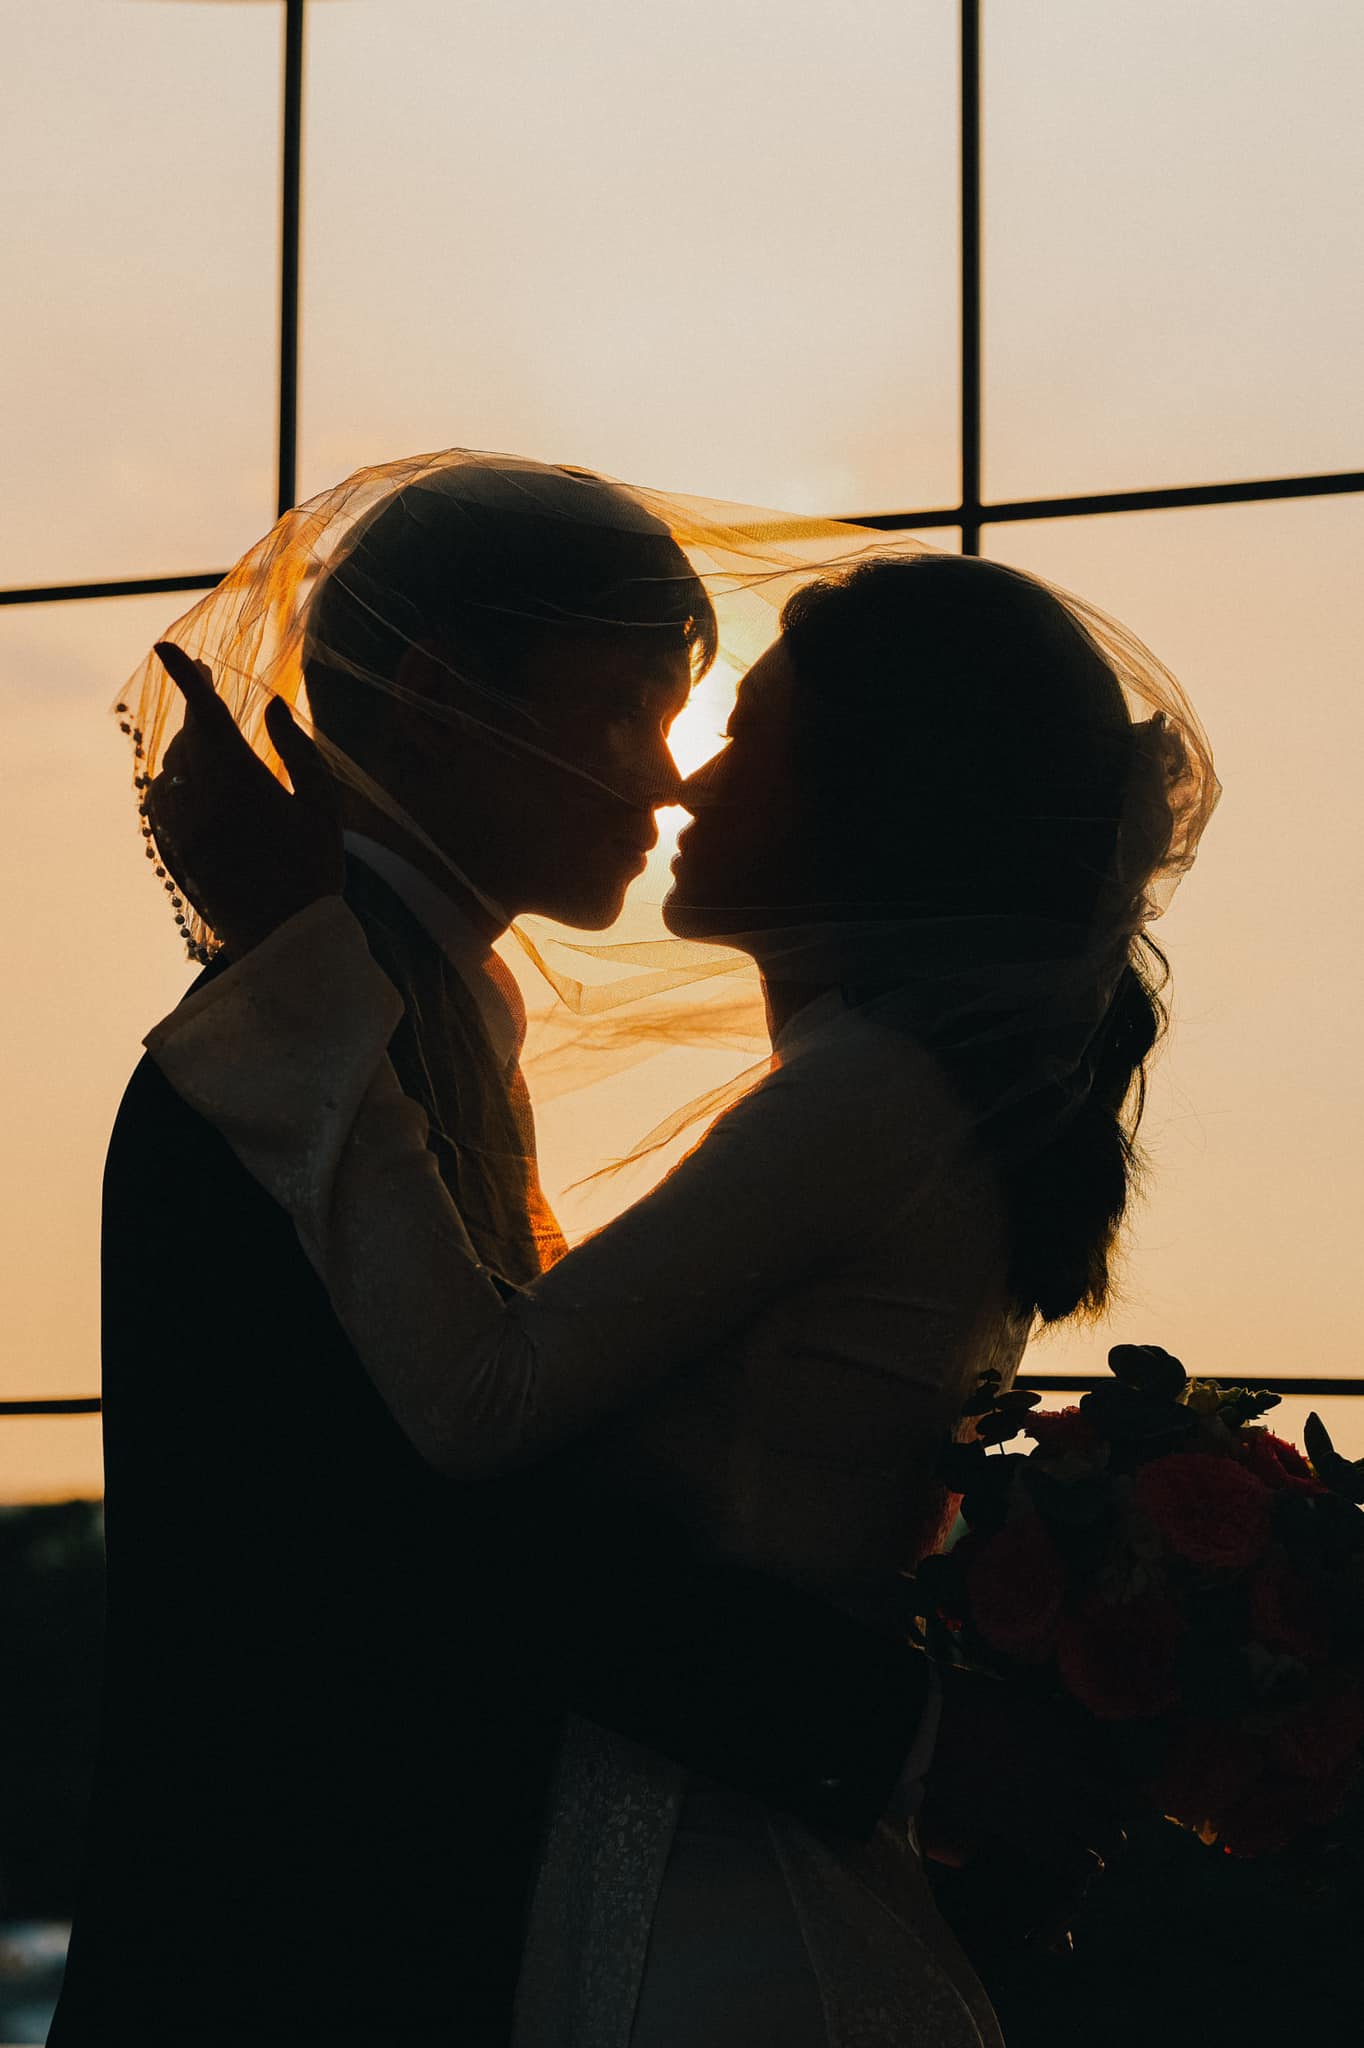 Valentine đến gần, sao Việt bất ngờ đăng ảnh kết hôn khiến dân mạng “mếu máo”: Này là cưới thật hay quay MV?